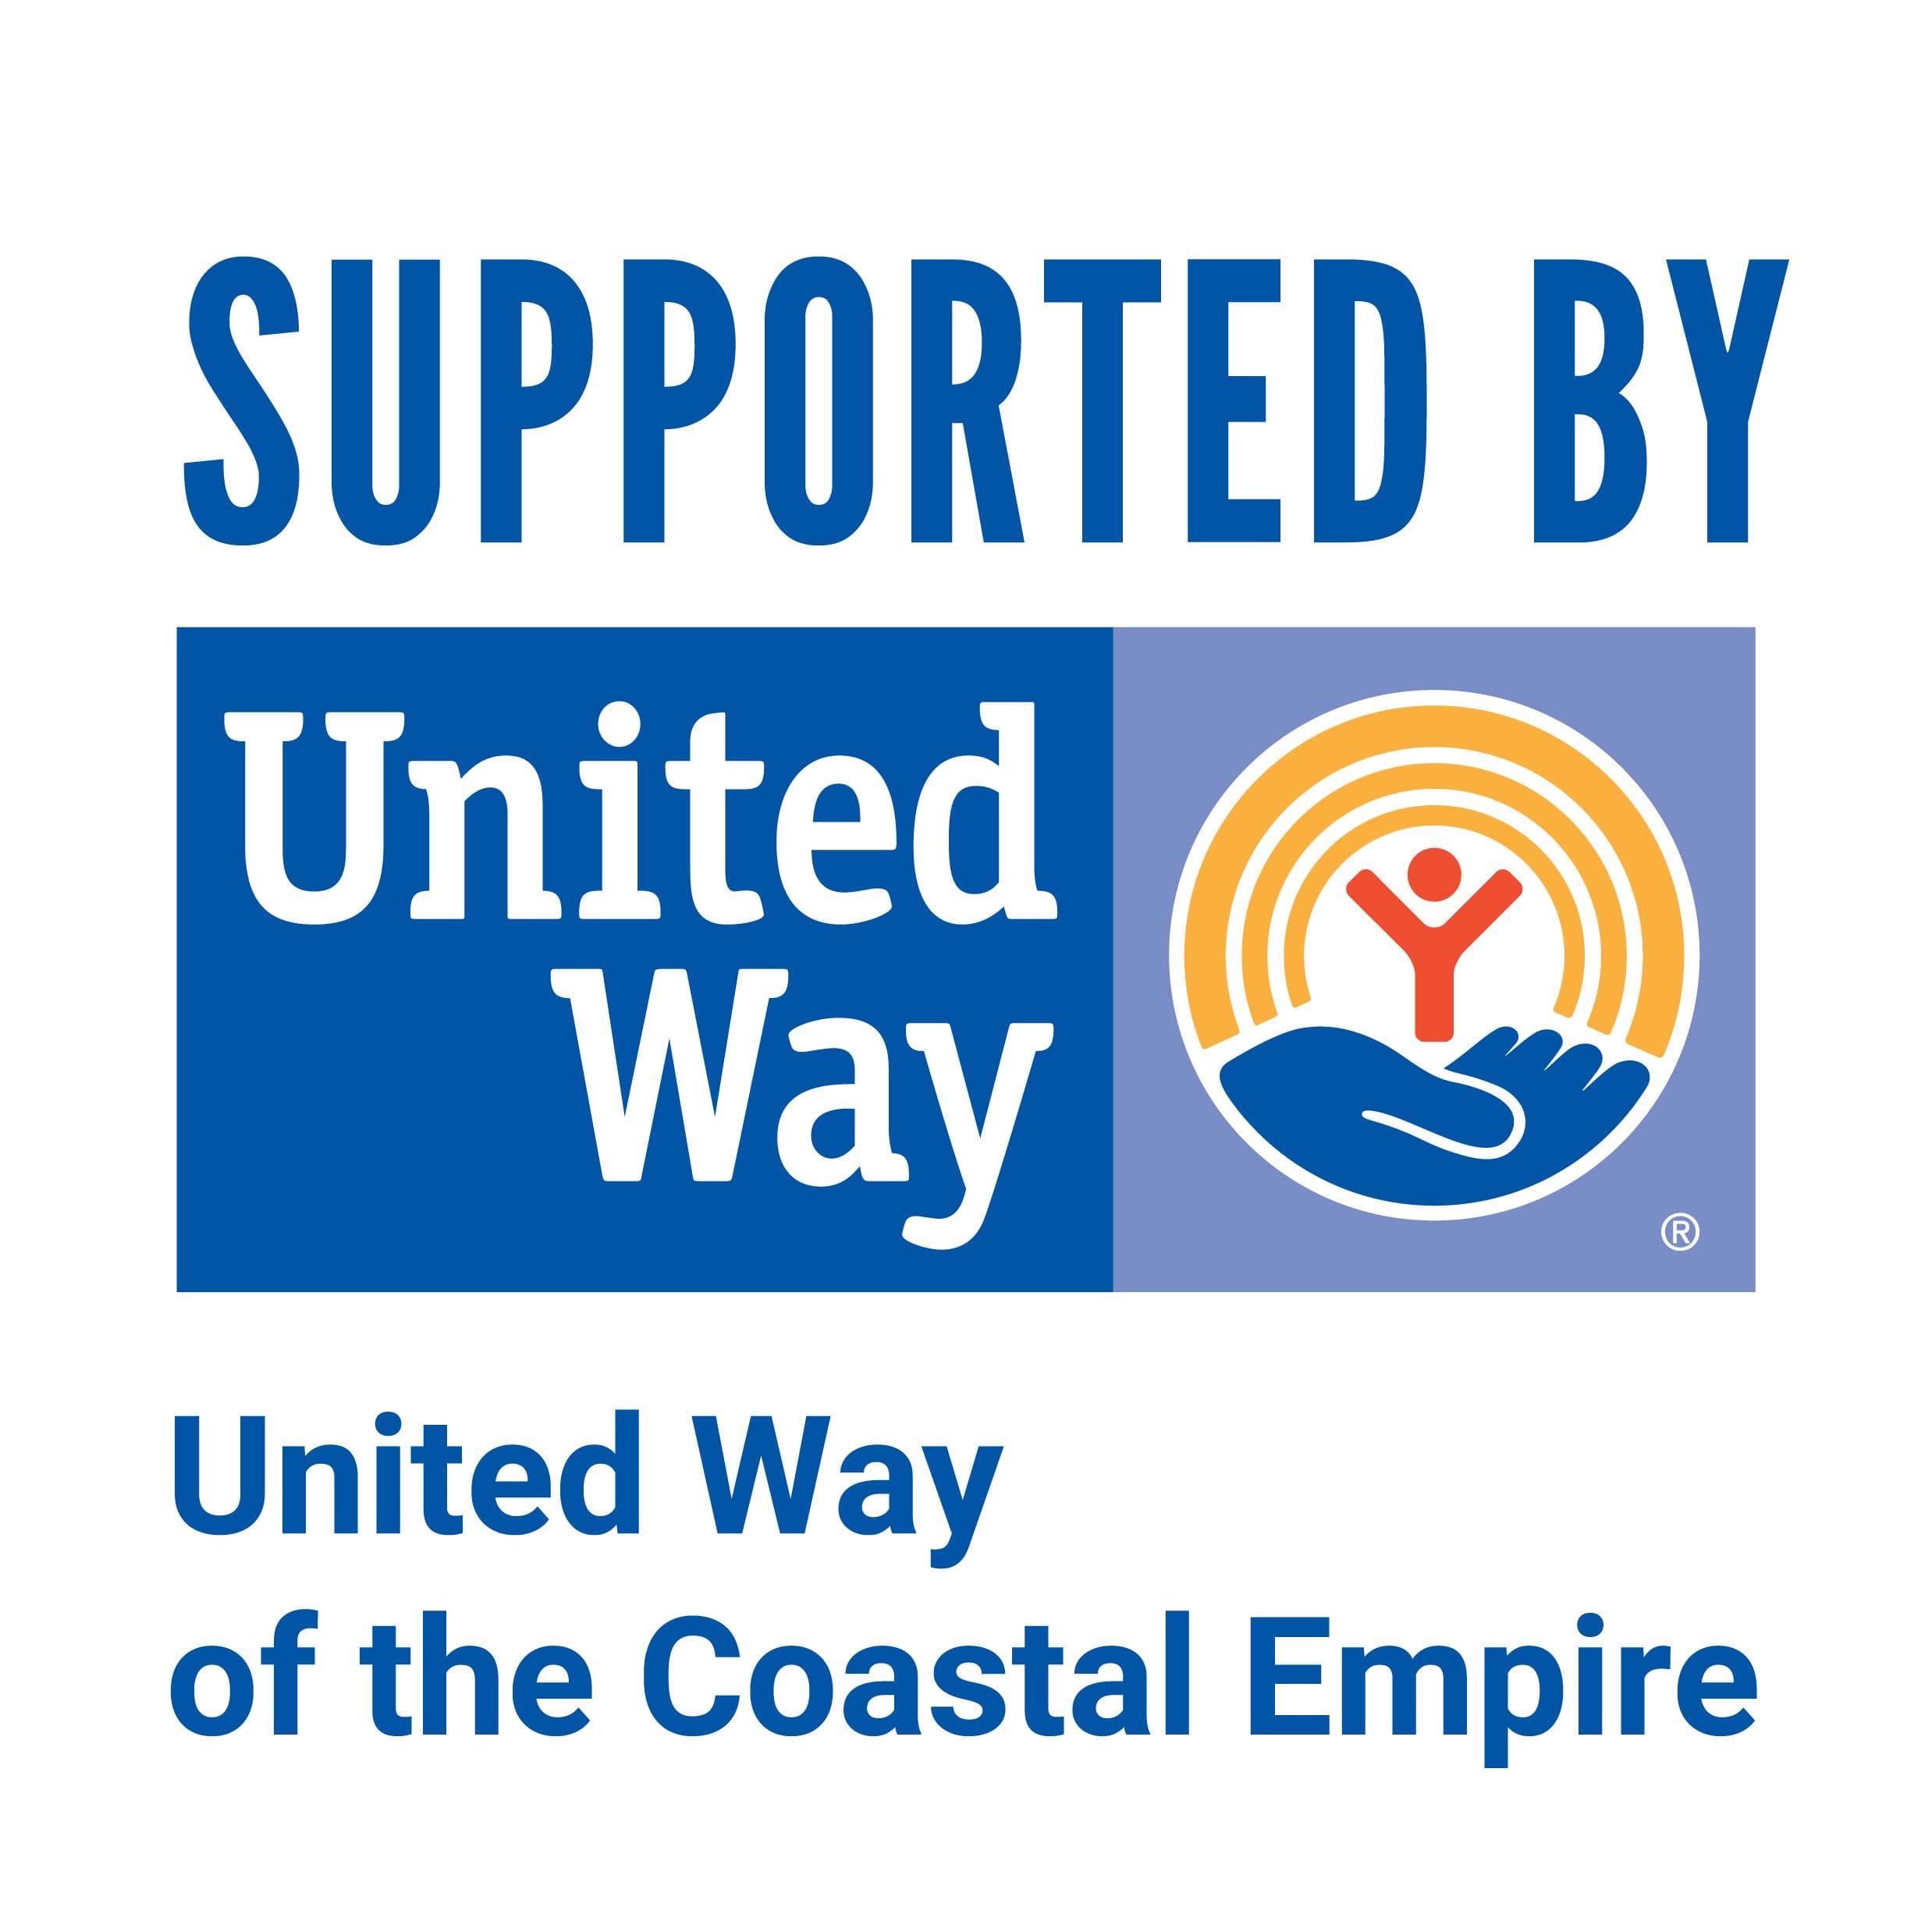 United Way of the Coastal Empire